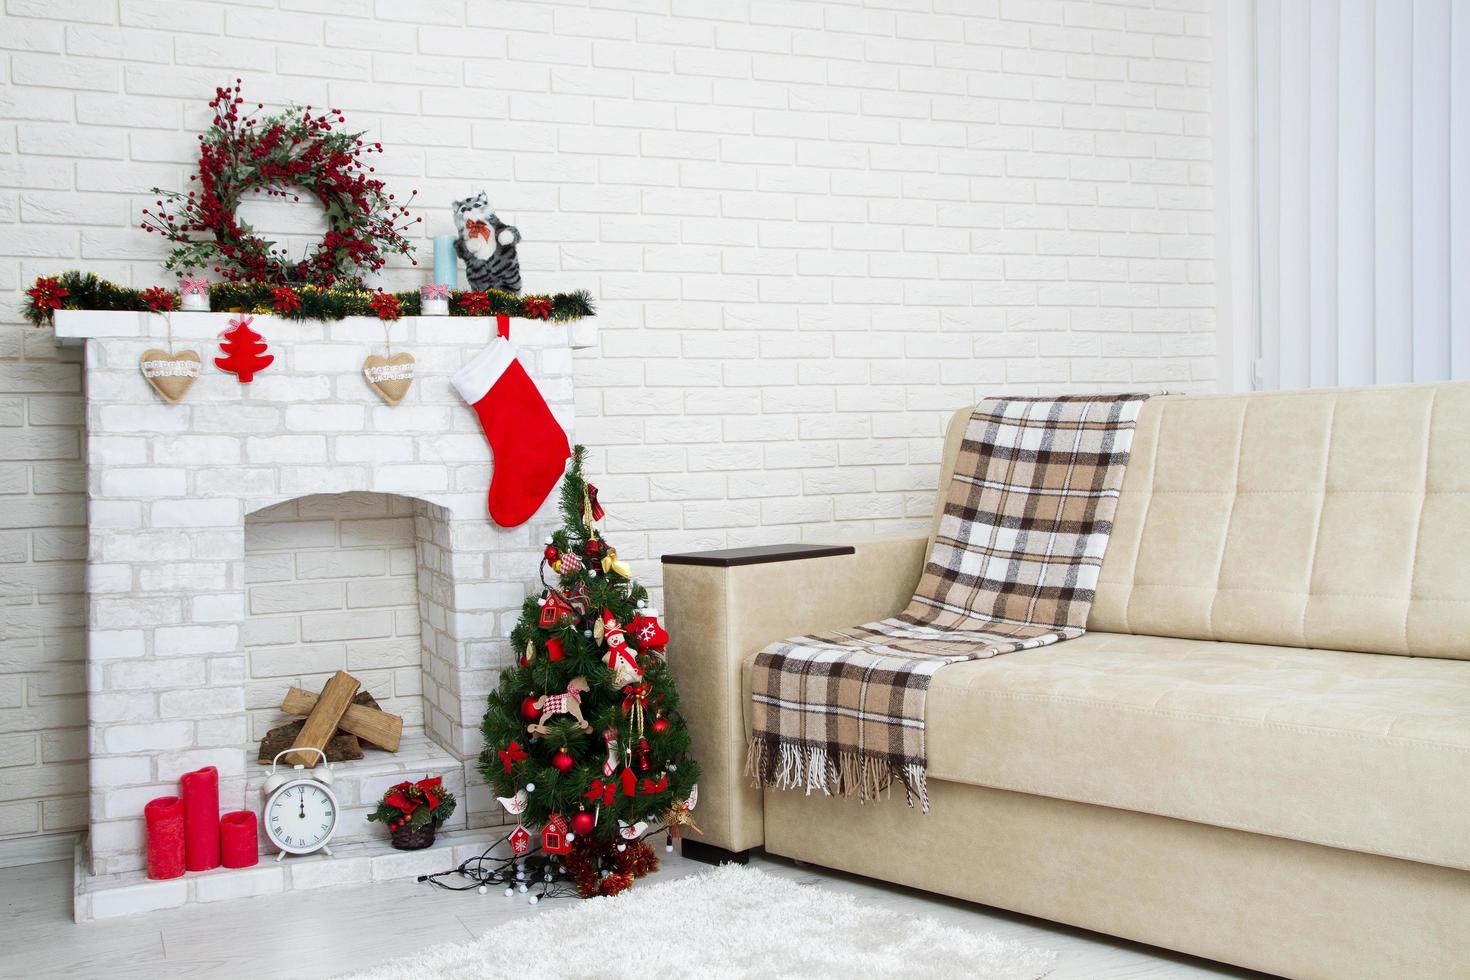 kerst woonkamer met een kerstboom en open haard presenteert eronder - moderne klassieke stijl, nieuwjaarsconcept foto